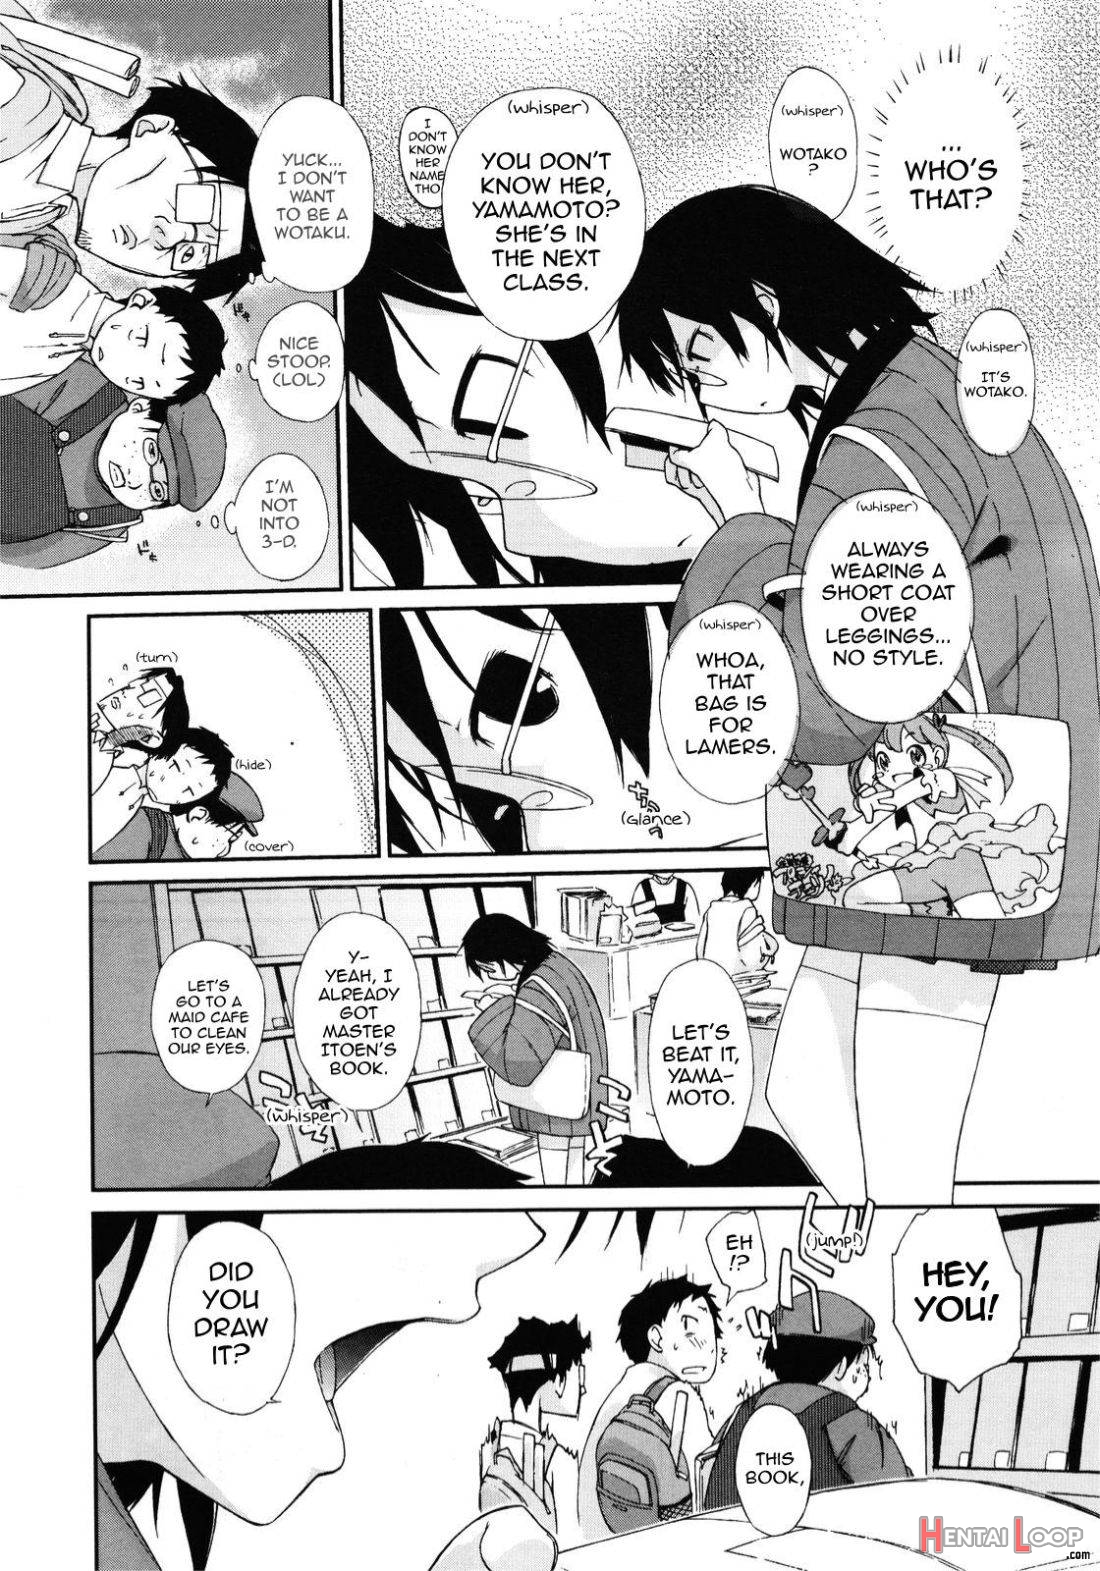 Wotako-san page 4